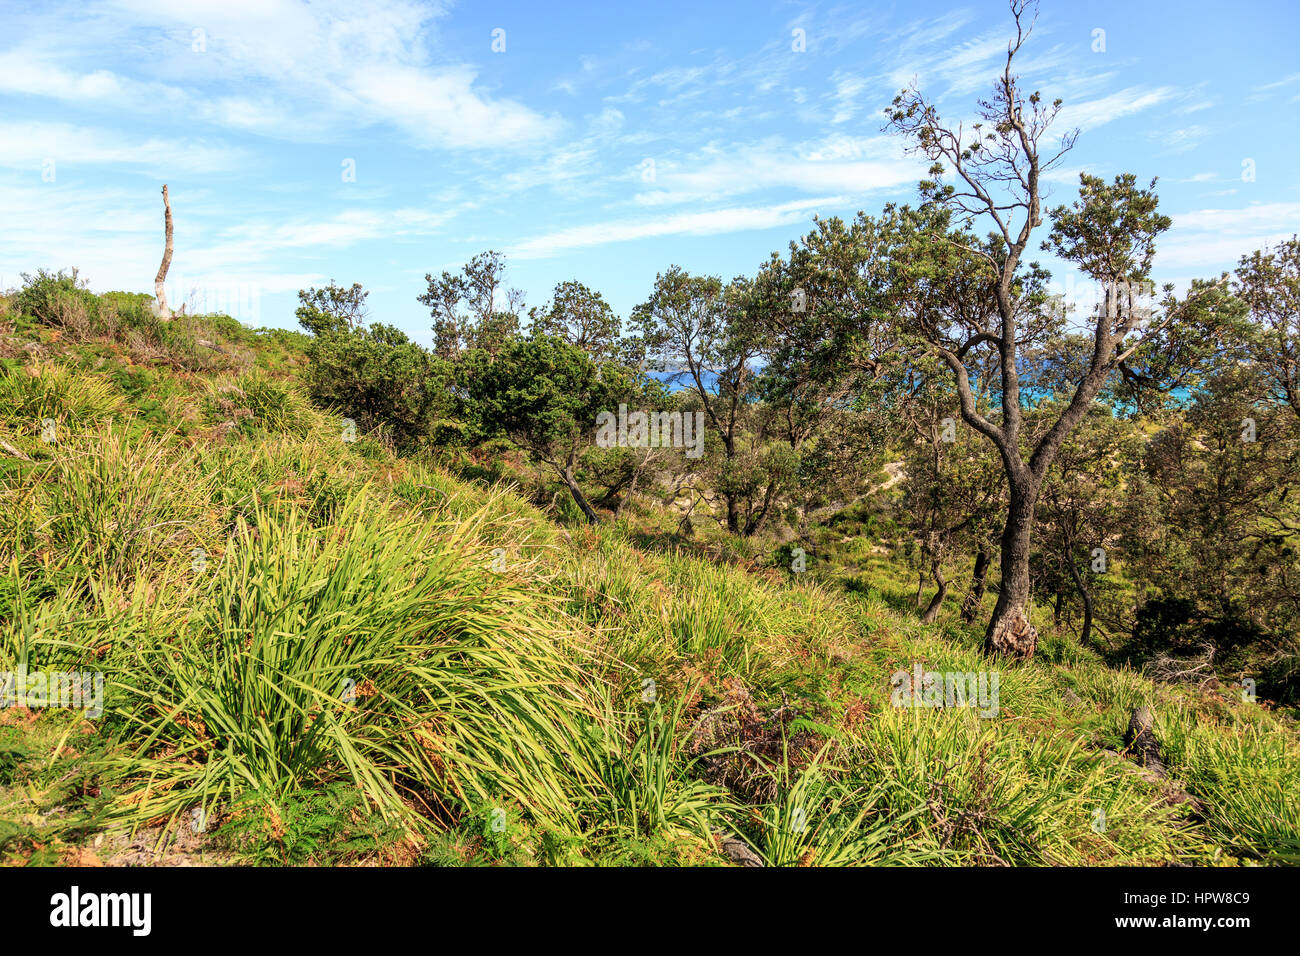 Le parc national Booderee bay dans la sienne avec la nature verte et de bush, de l'Australie Banque D'Images